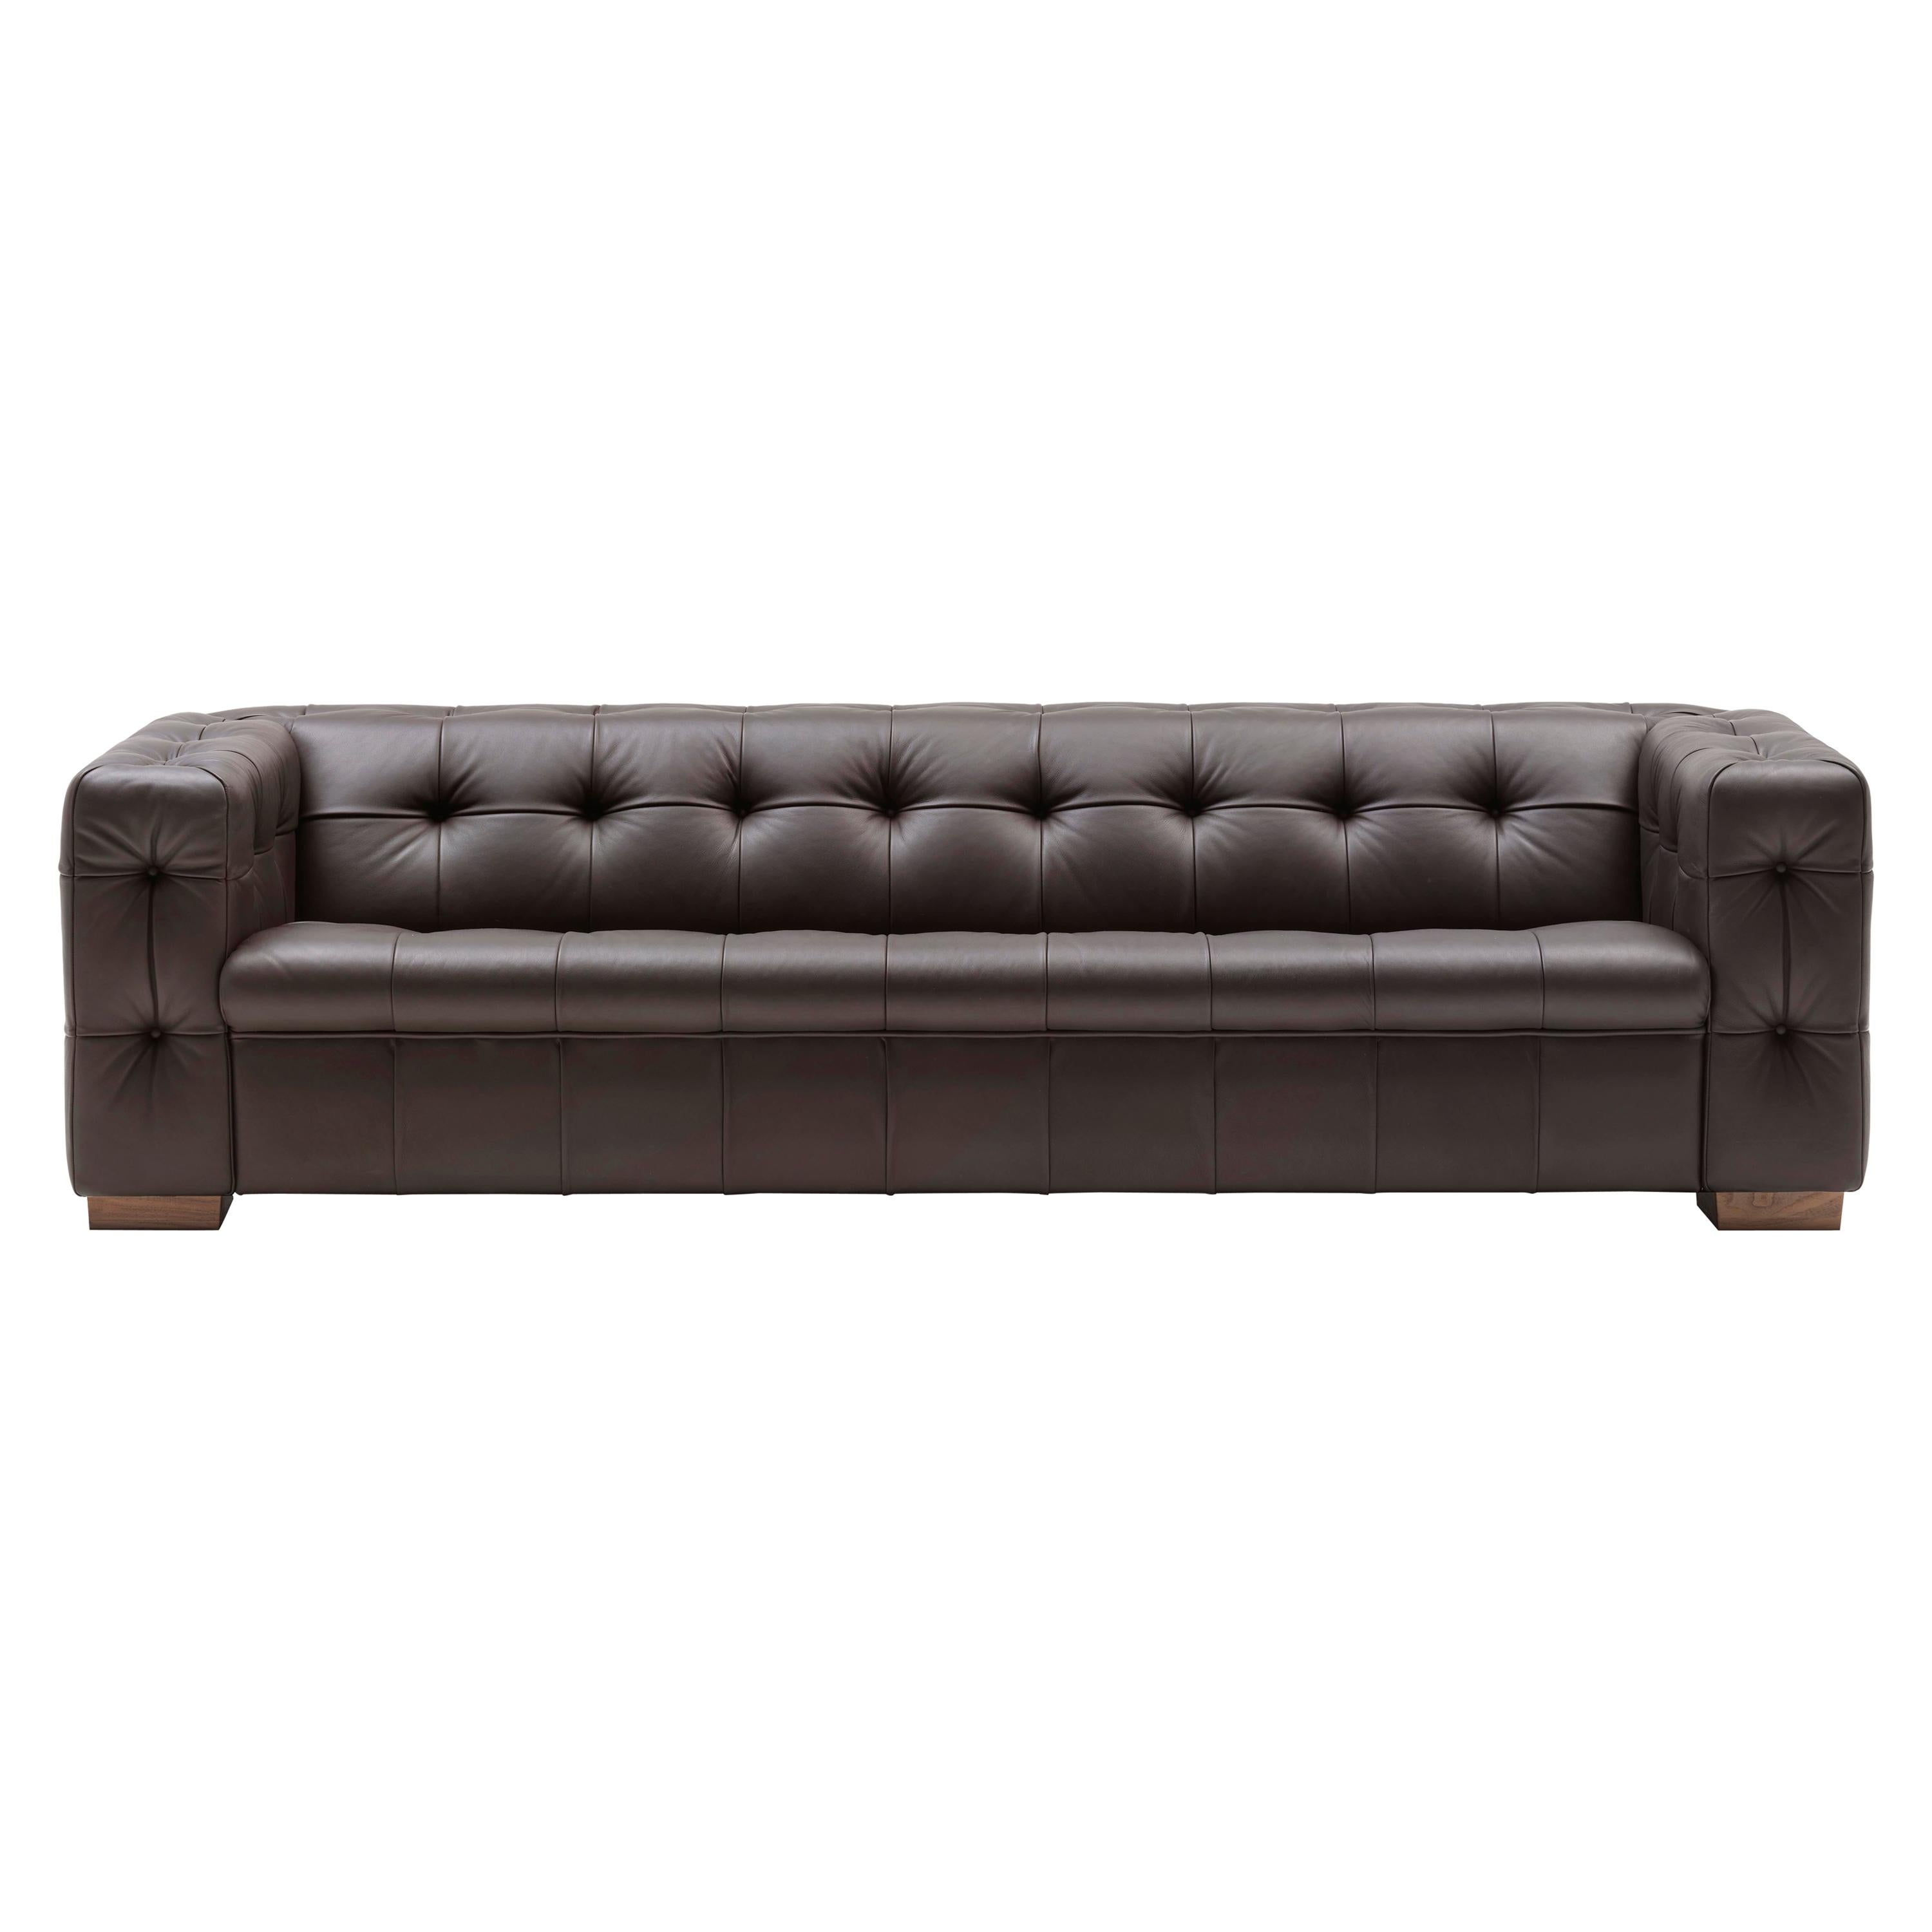 RH-306 Sofa by De Sede For Sale